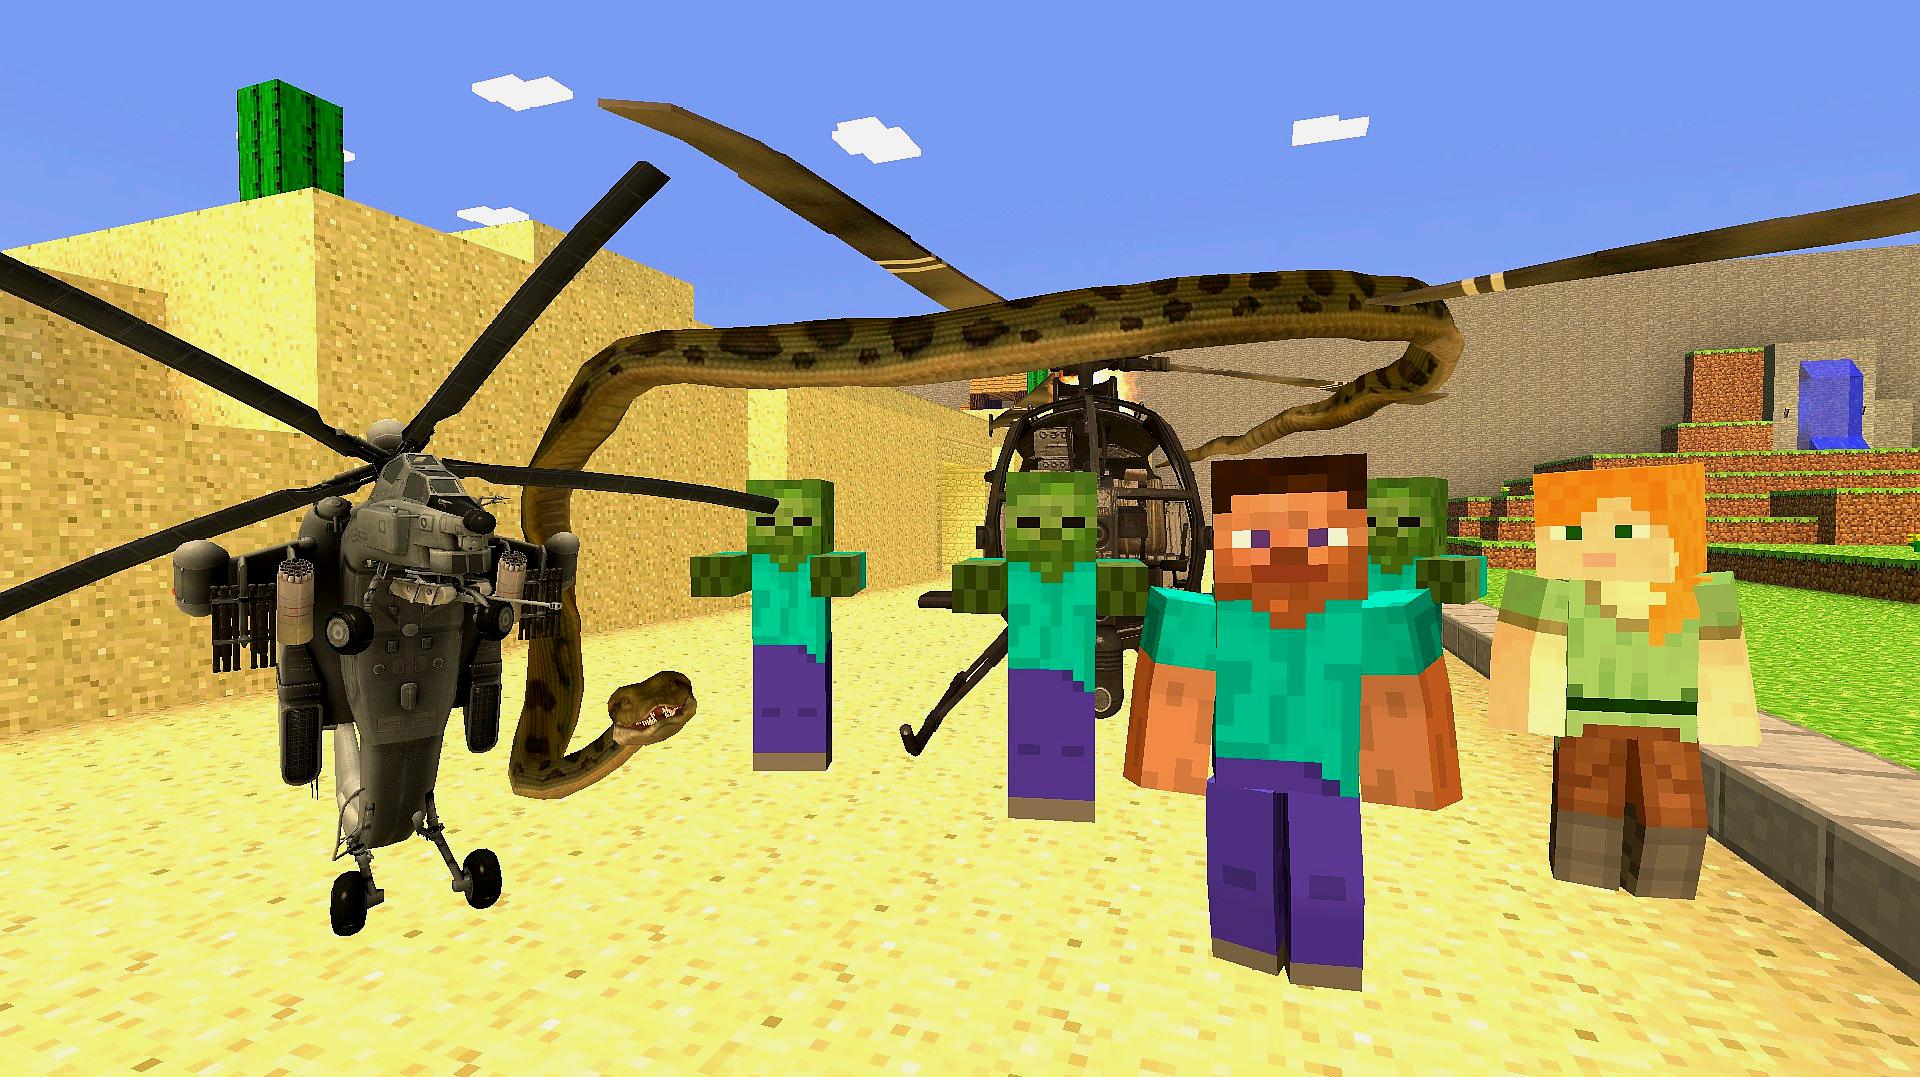 gmod游戏僵尸抓蟒蛇用来缠住小美直升机的螺旋桨